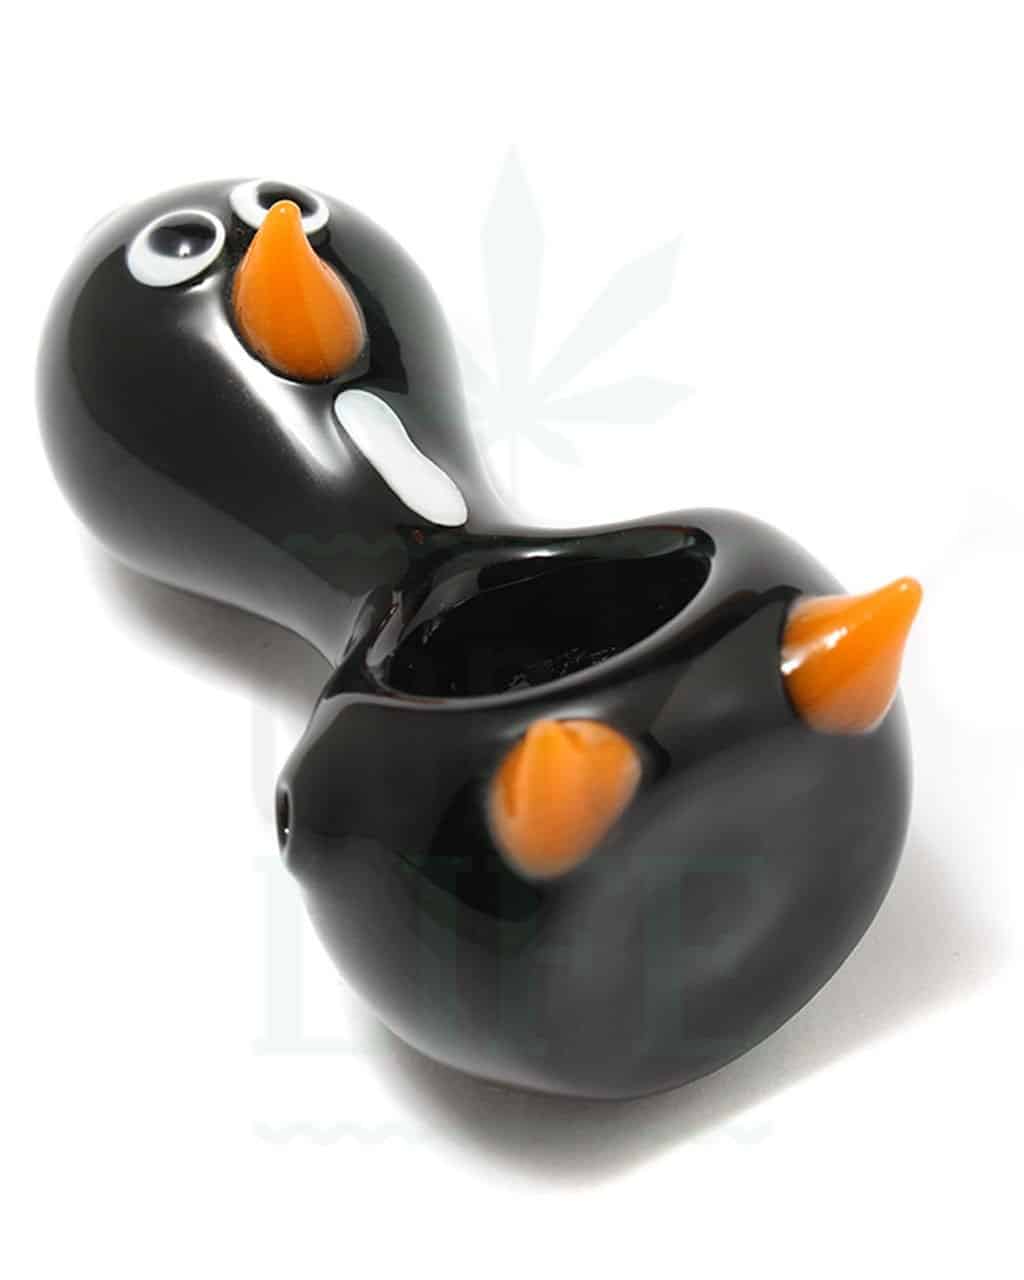 Glaspfeifen “Pingu” Spoon Pipe